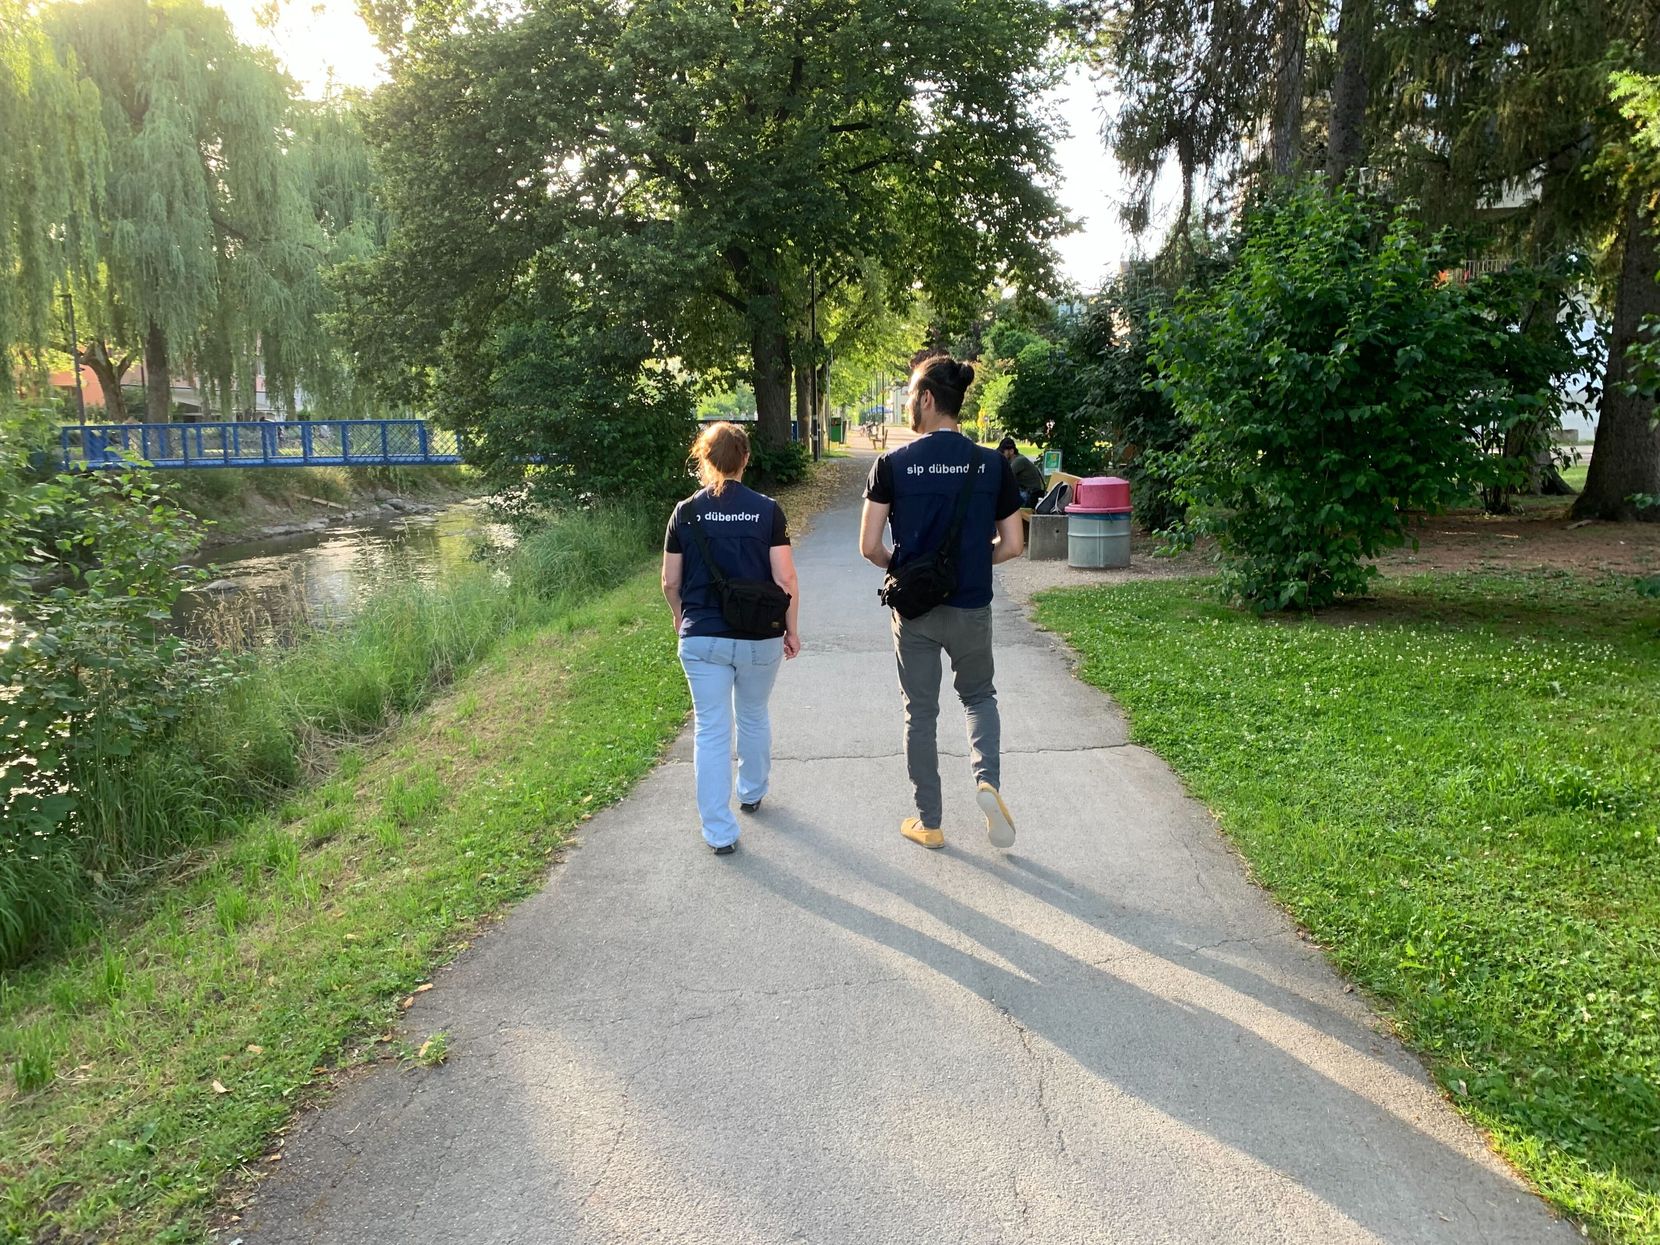 Zwei Personen spazieren auf einem Weg entlang einem Fluss; man sieht sie von hinten.